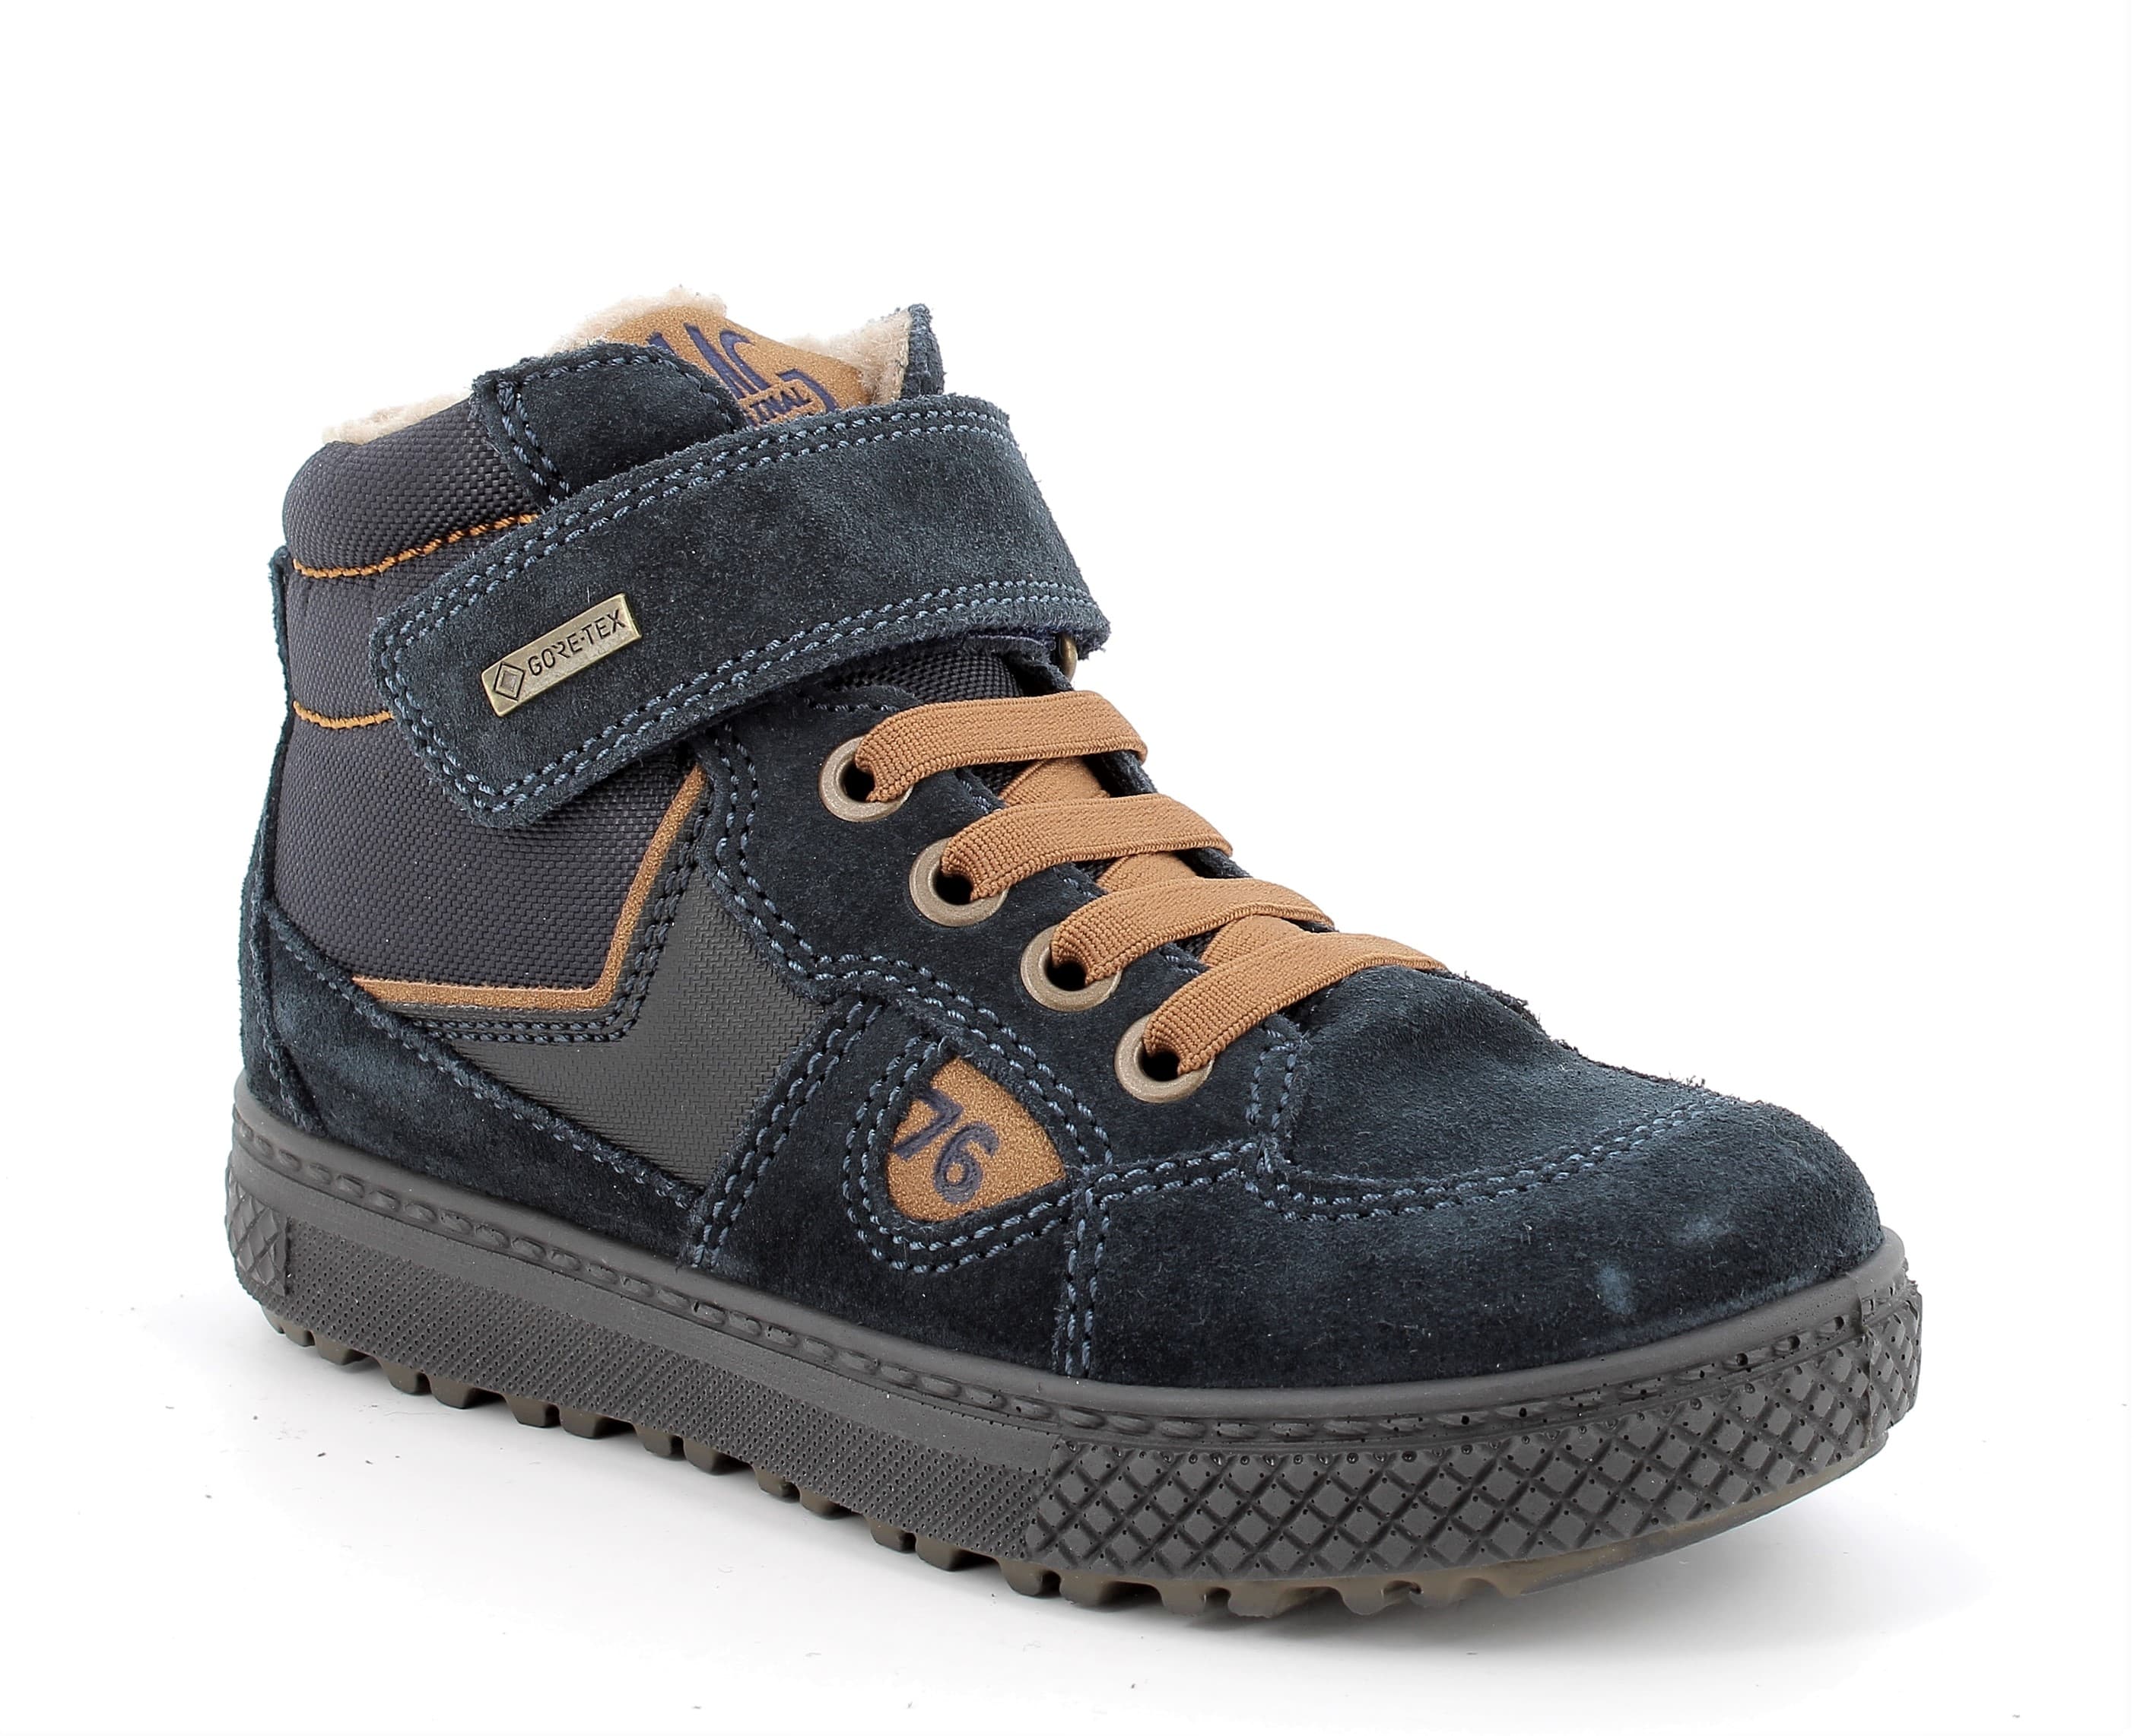 Chlapecké zimní boty Primigi Gore-Tex 2889500 Velikost: 29